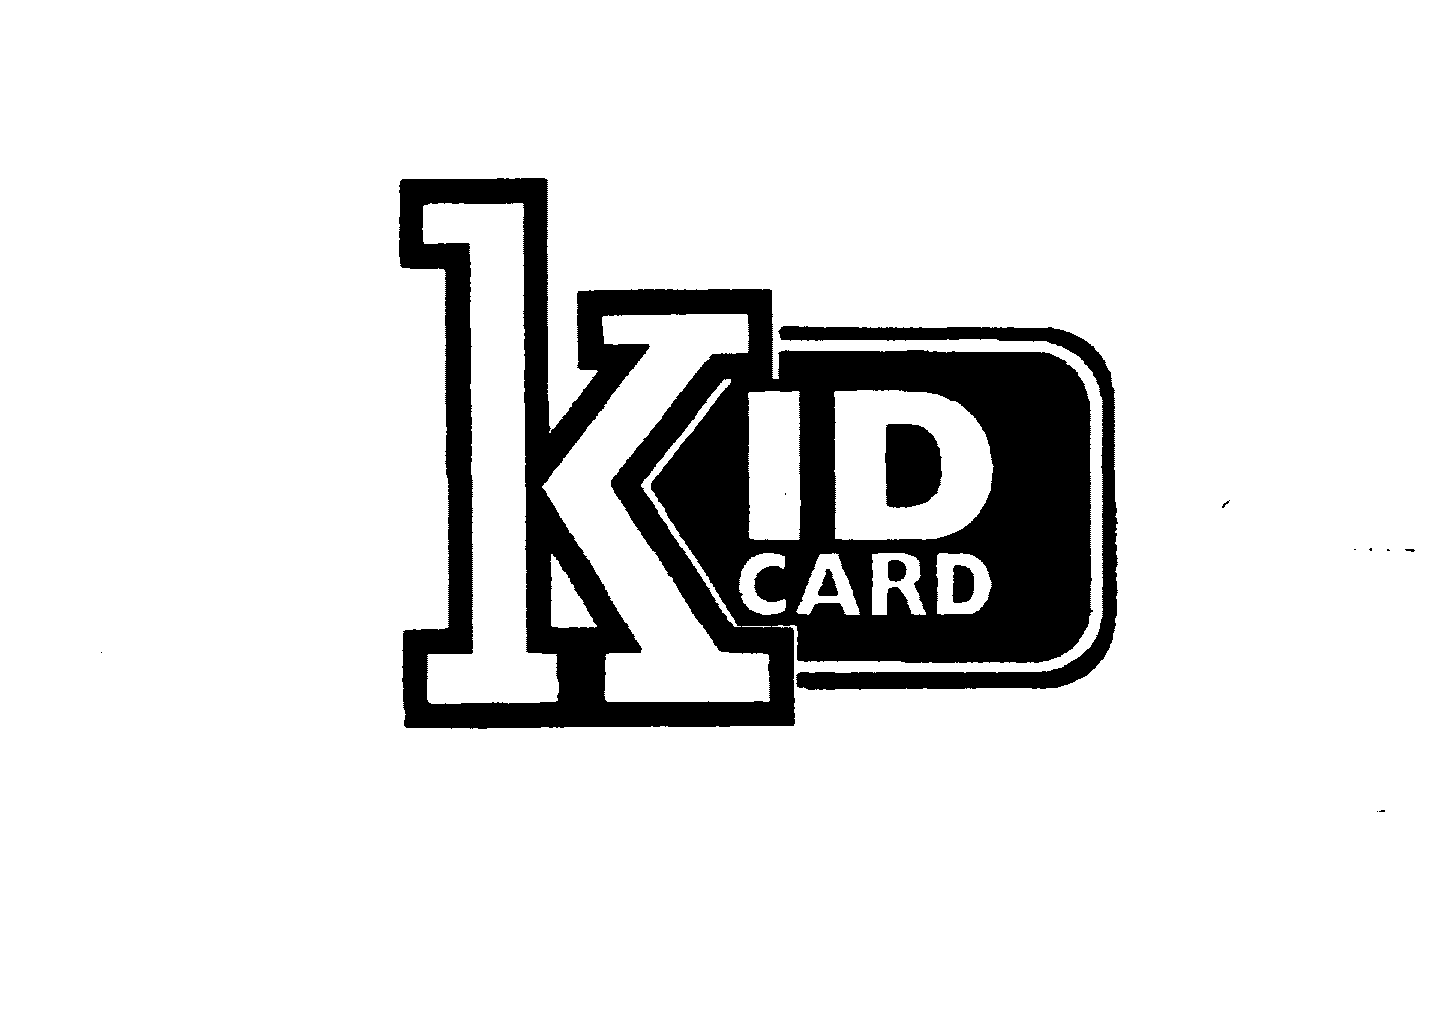  KID ID